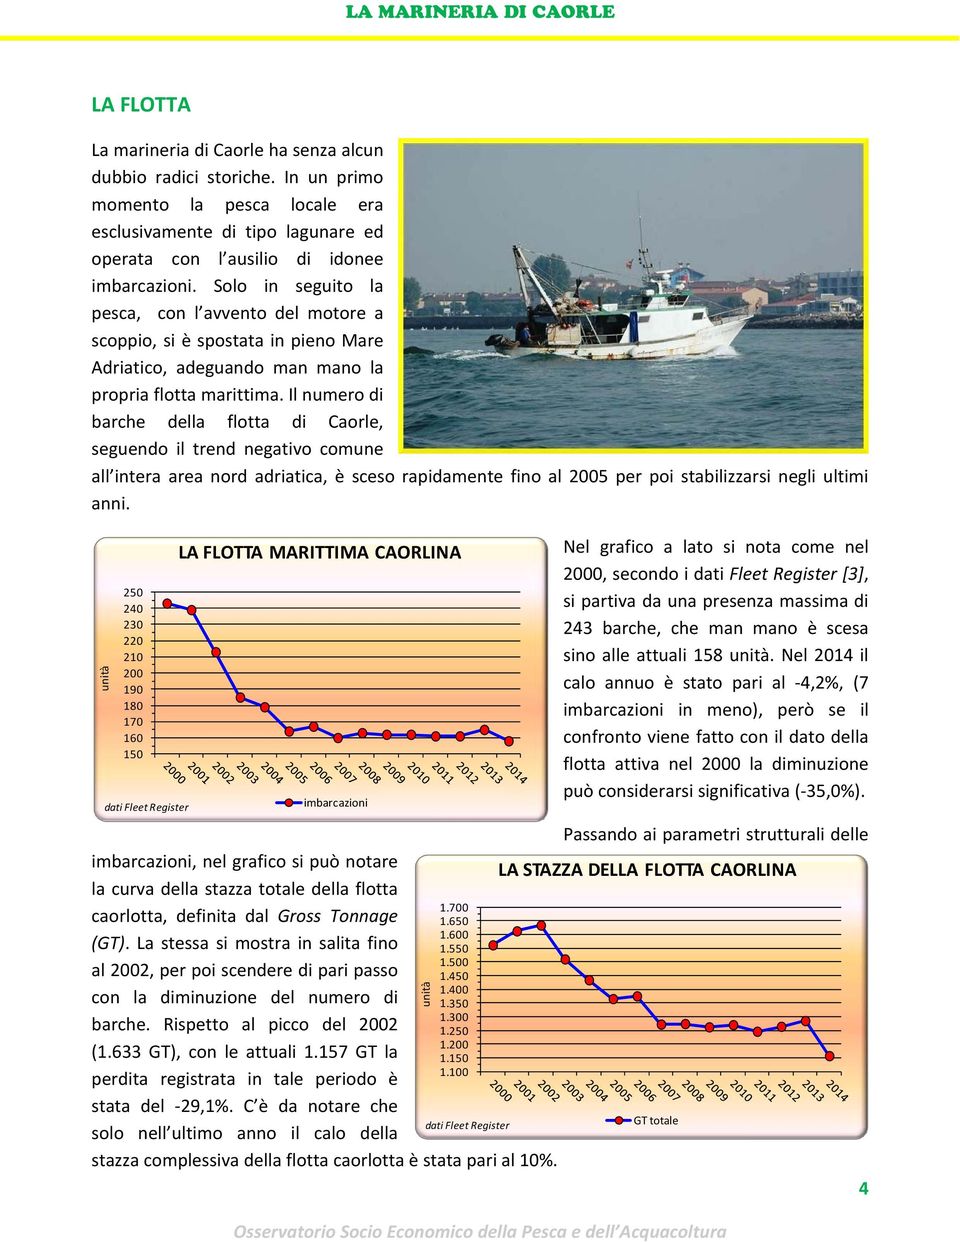 Il numero di barche della flotta di Caorle, seguendo il trend negativo comune all intera area nord adriatica, è sceso rapidamente fino al 2005 per poi stabilizzarsi negli ultimi anni.